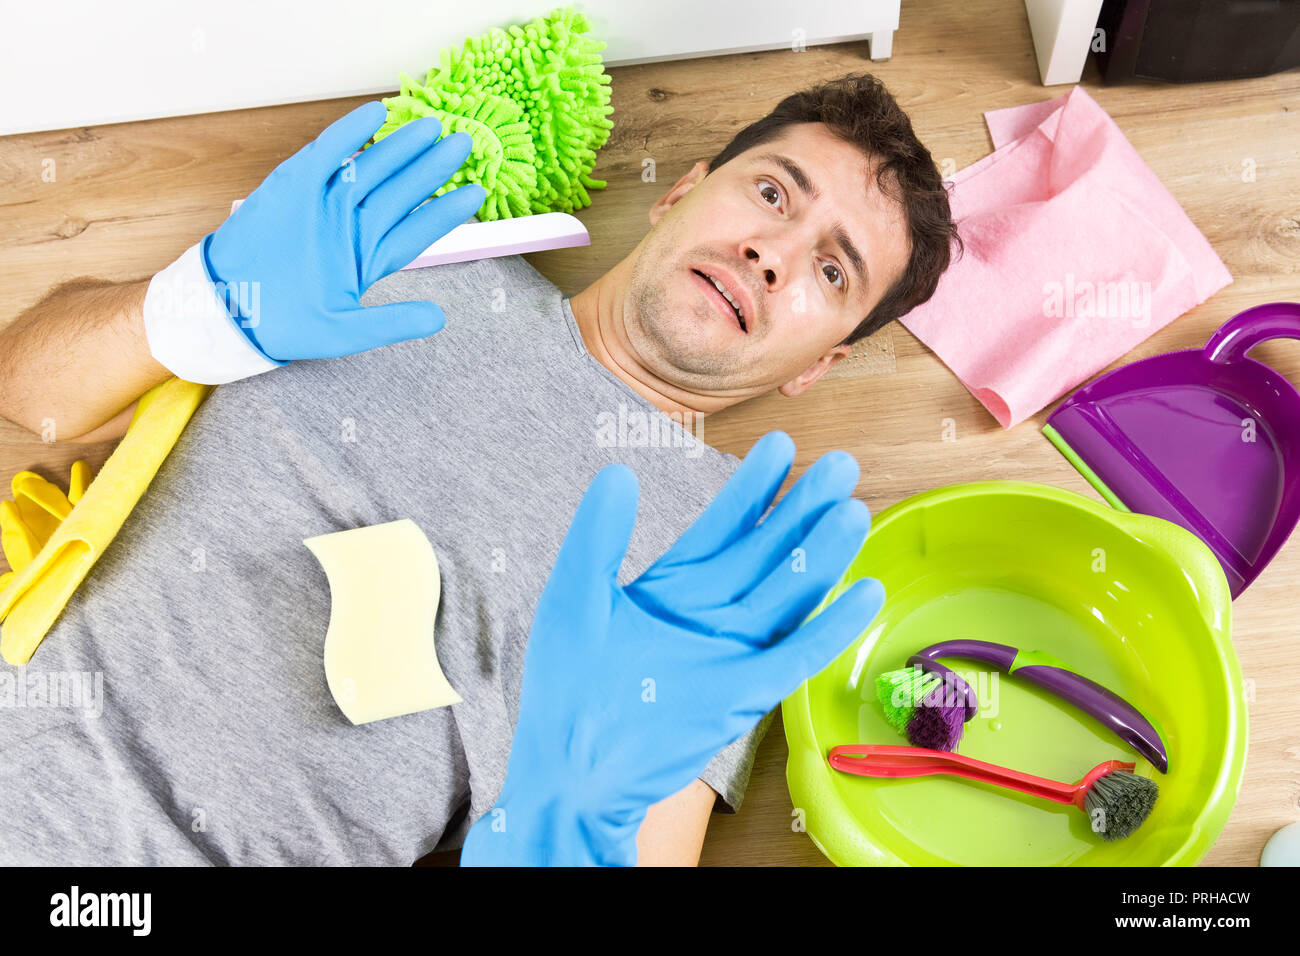 Junge Männer während der Reinigung betont. Er hat genug der allgemeinen Ordnung und Sauberkeit Stockfoto